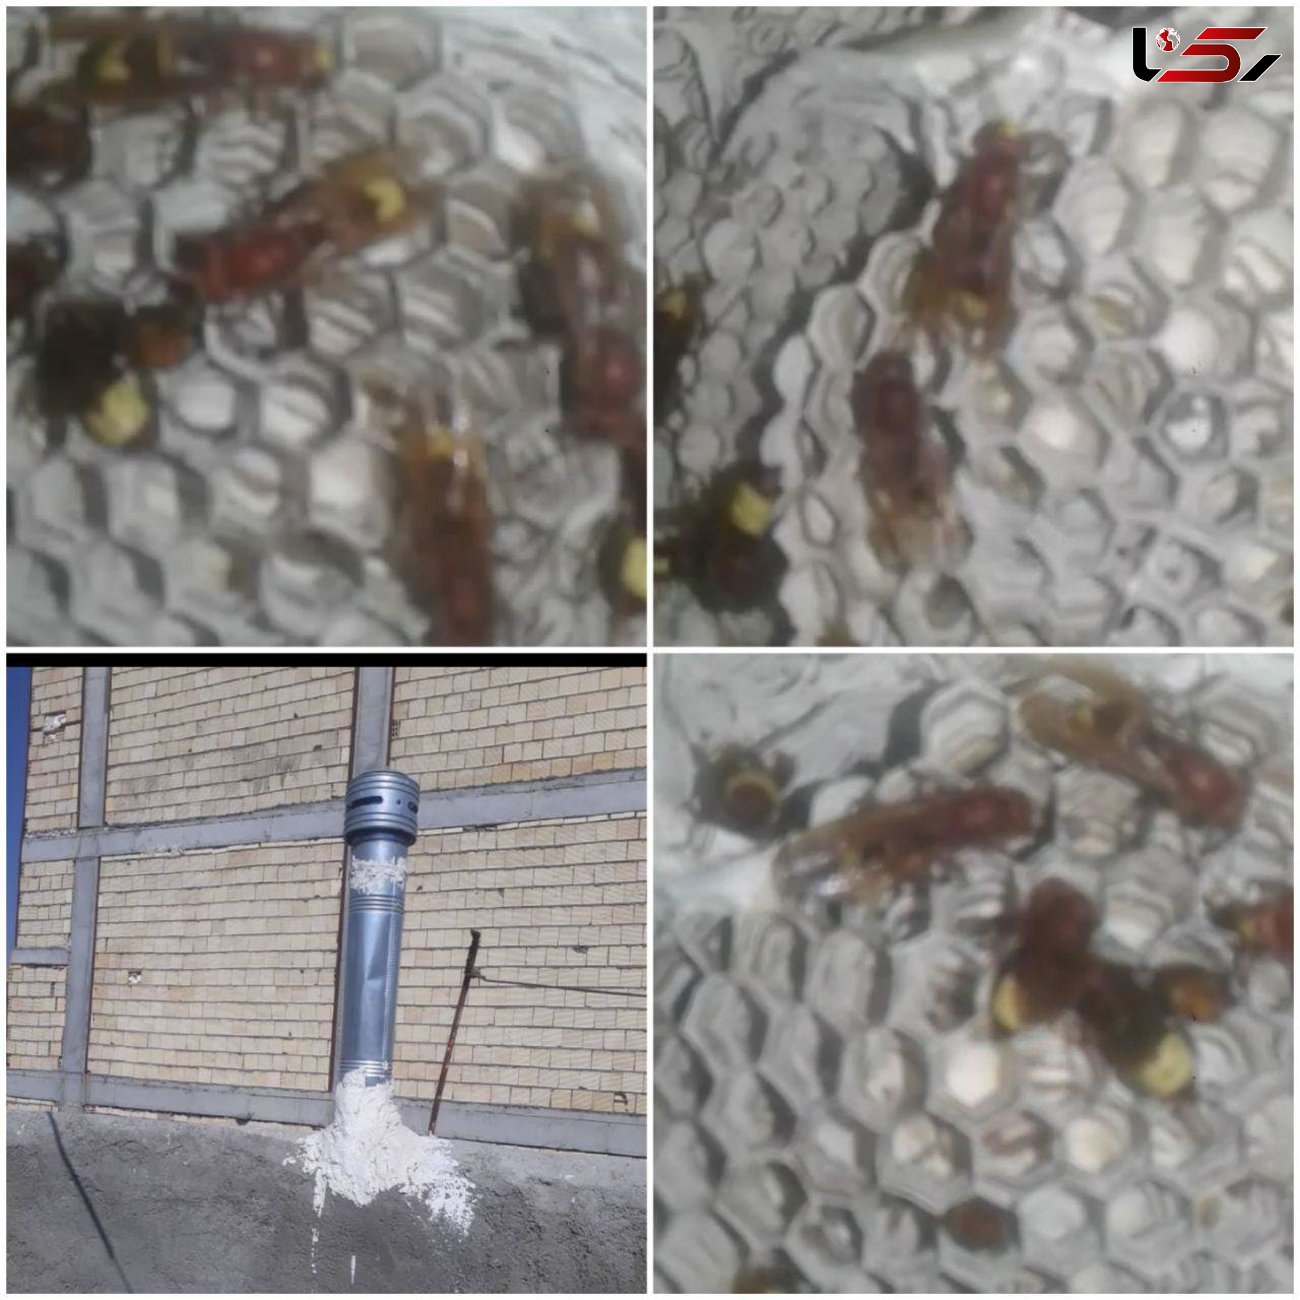 فرار از مرگ خانواده گلستانی با هوشیاری مادر / کشف کندوی زنبور در لوله بخاری! + عکس